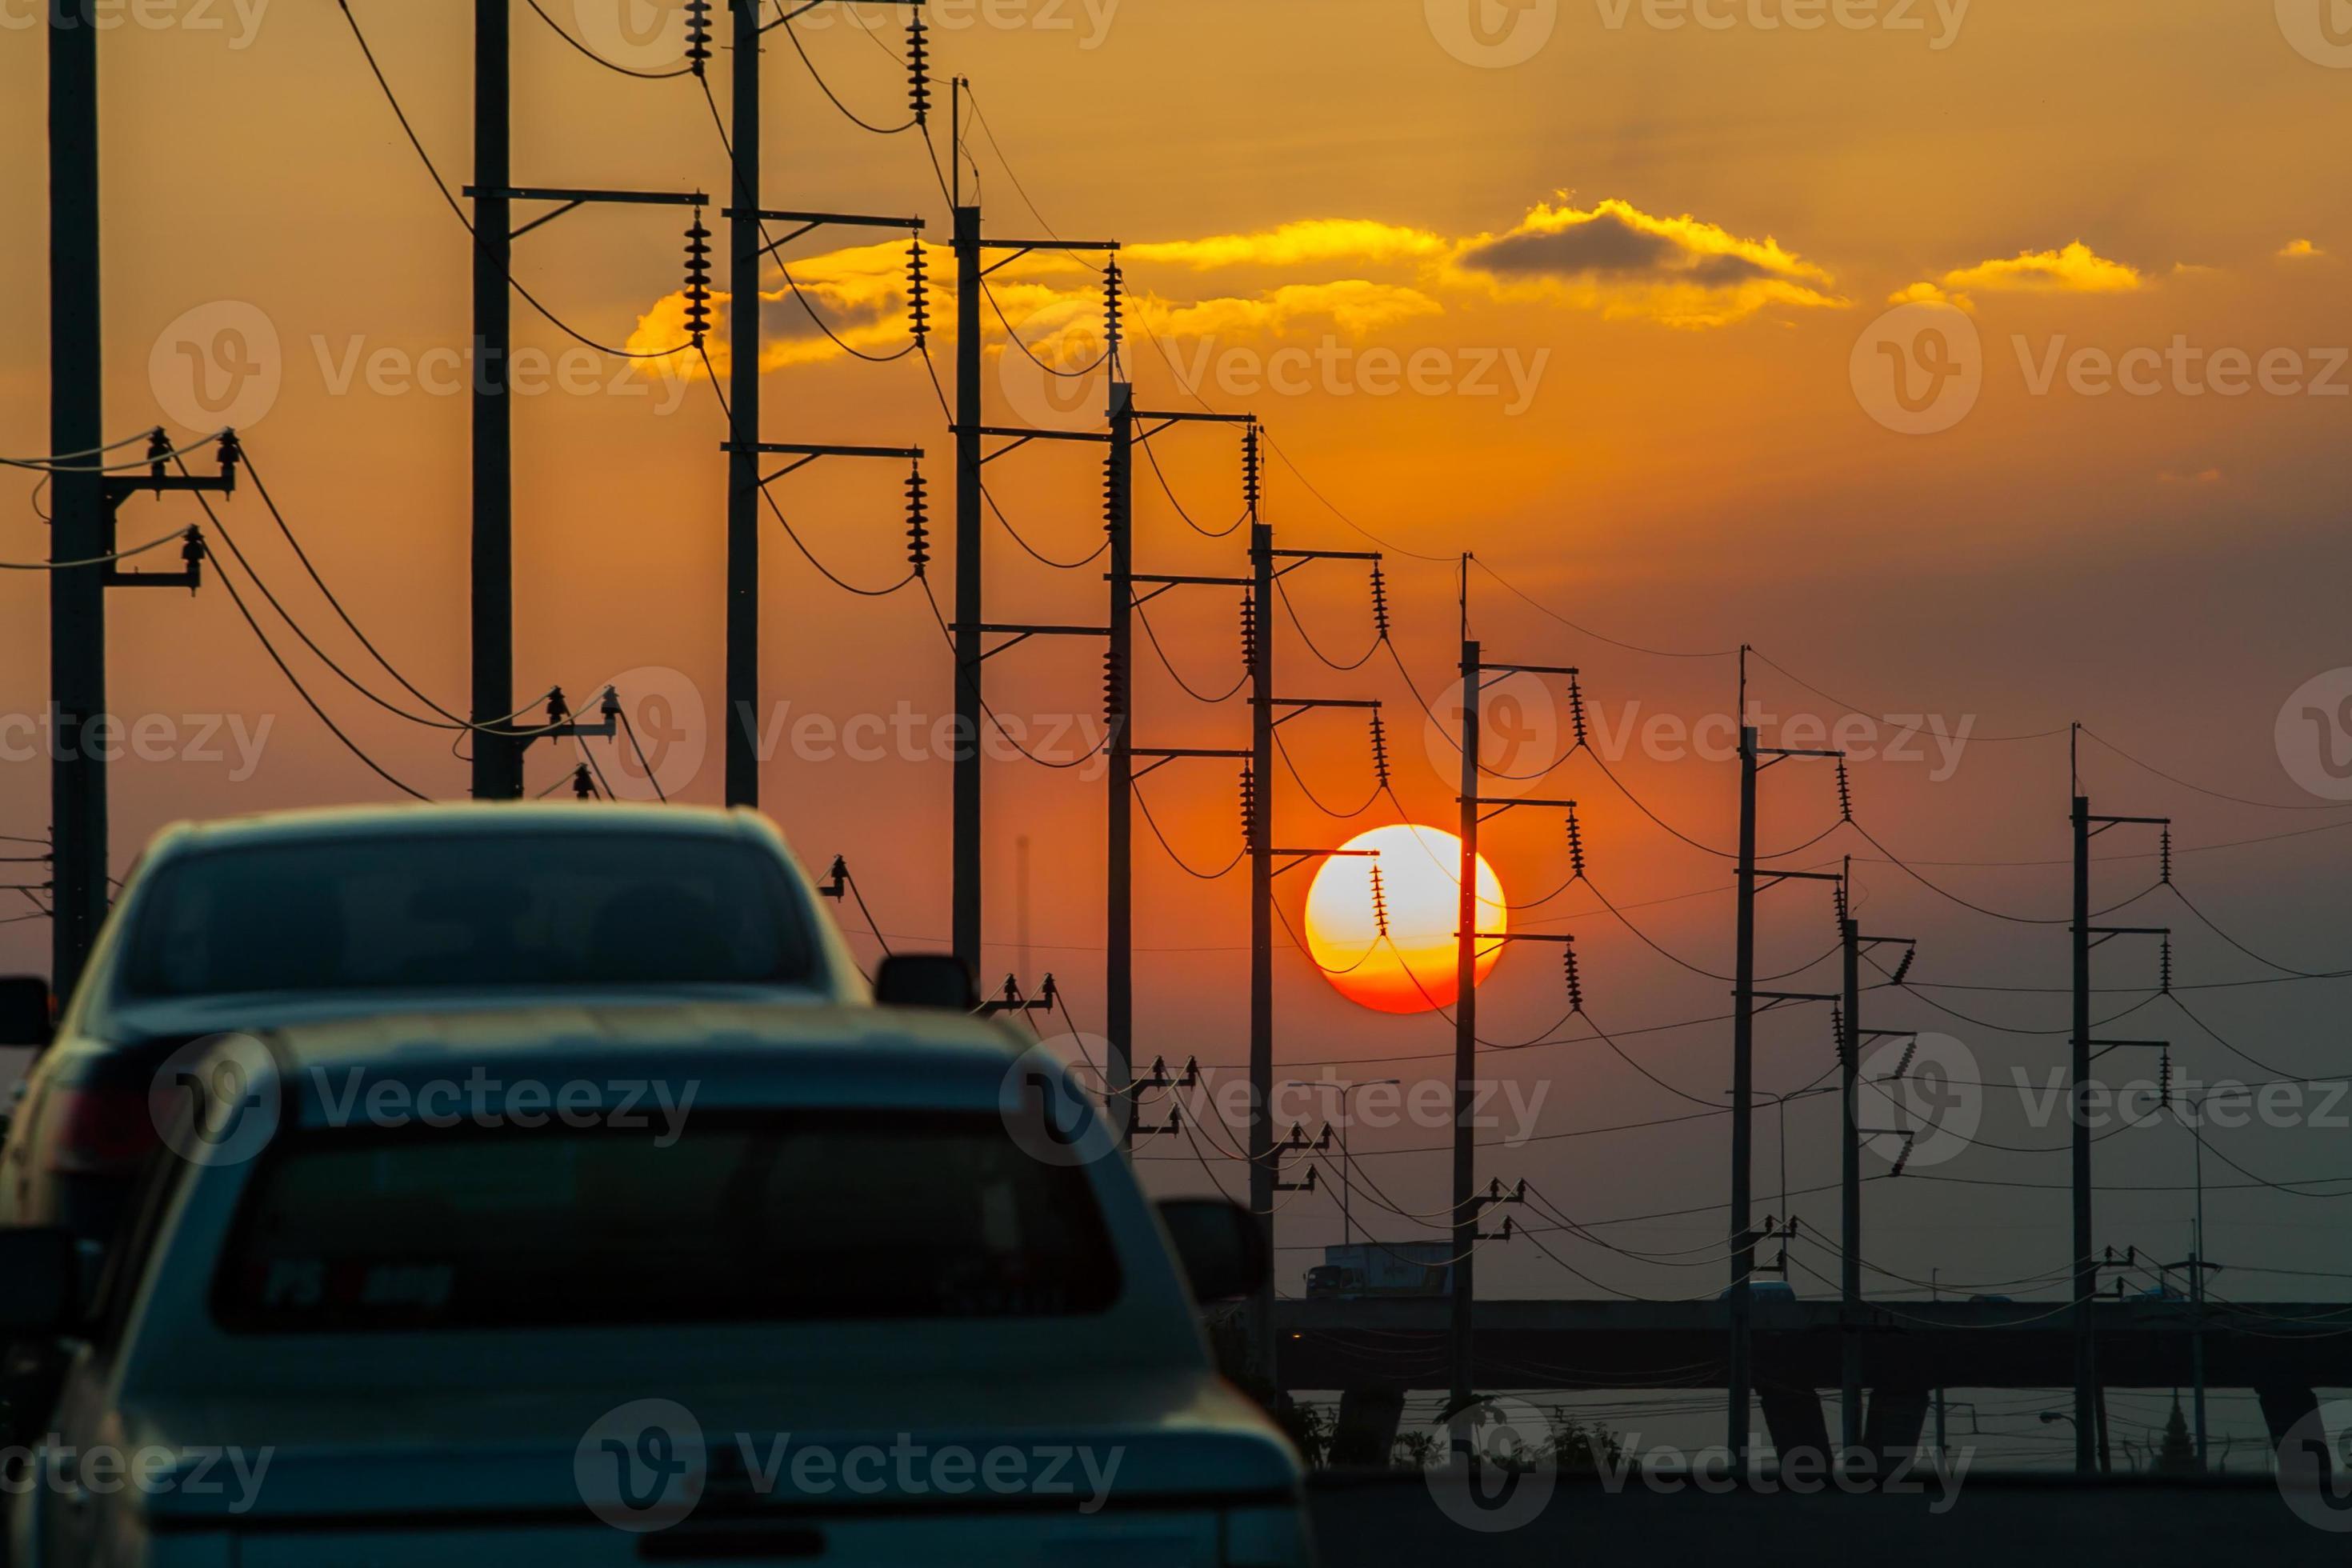 voitures et poteaux électriques au coucher du soleil photo